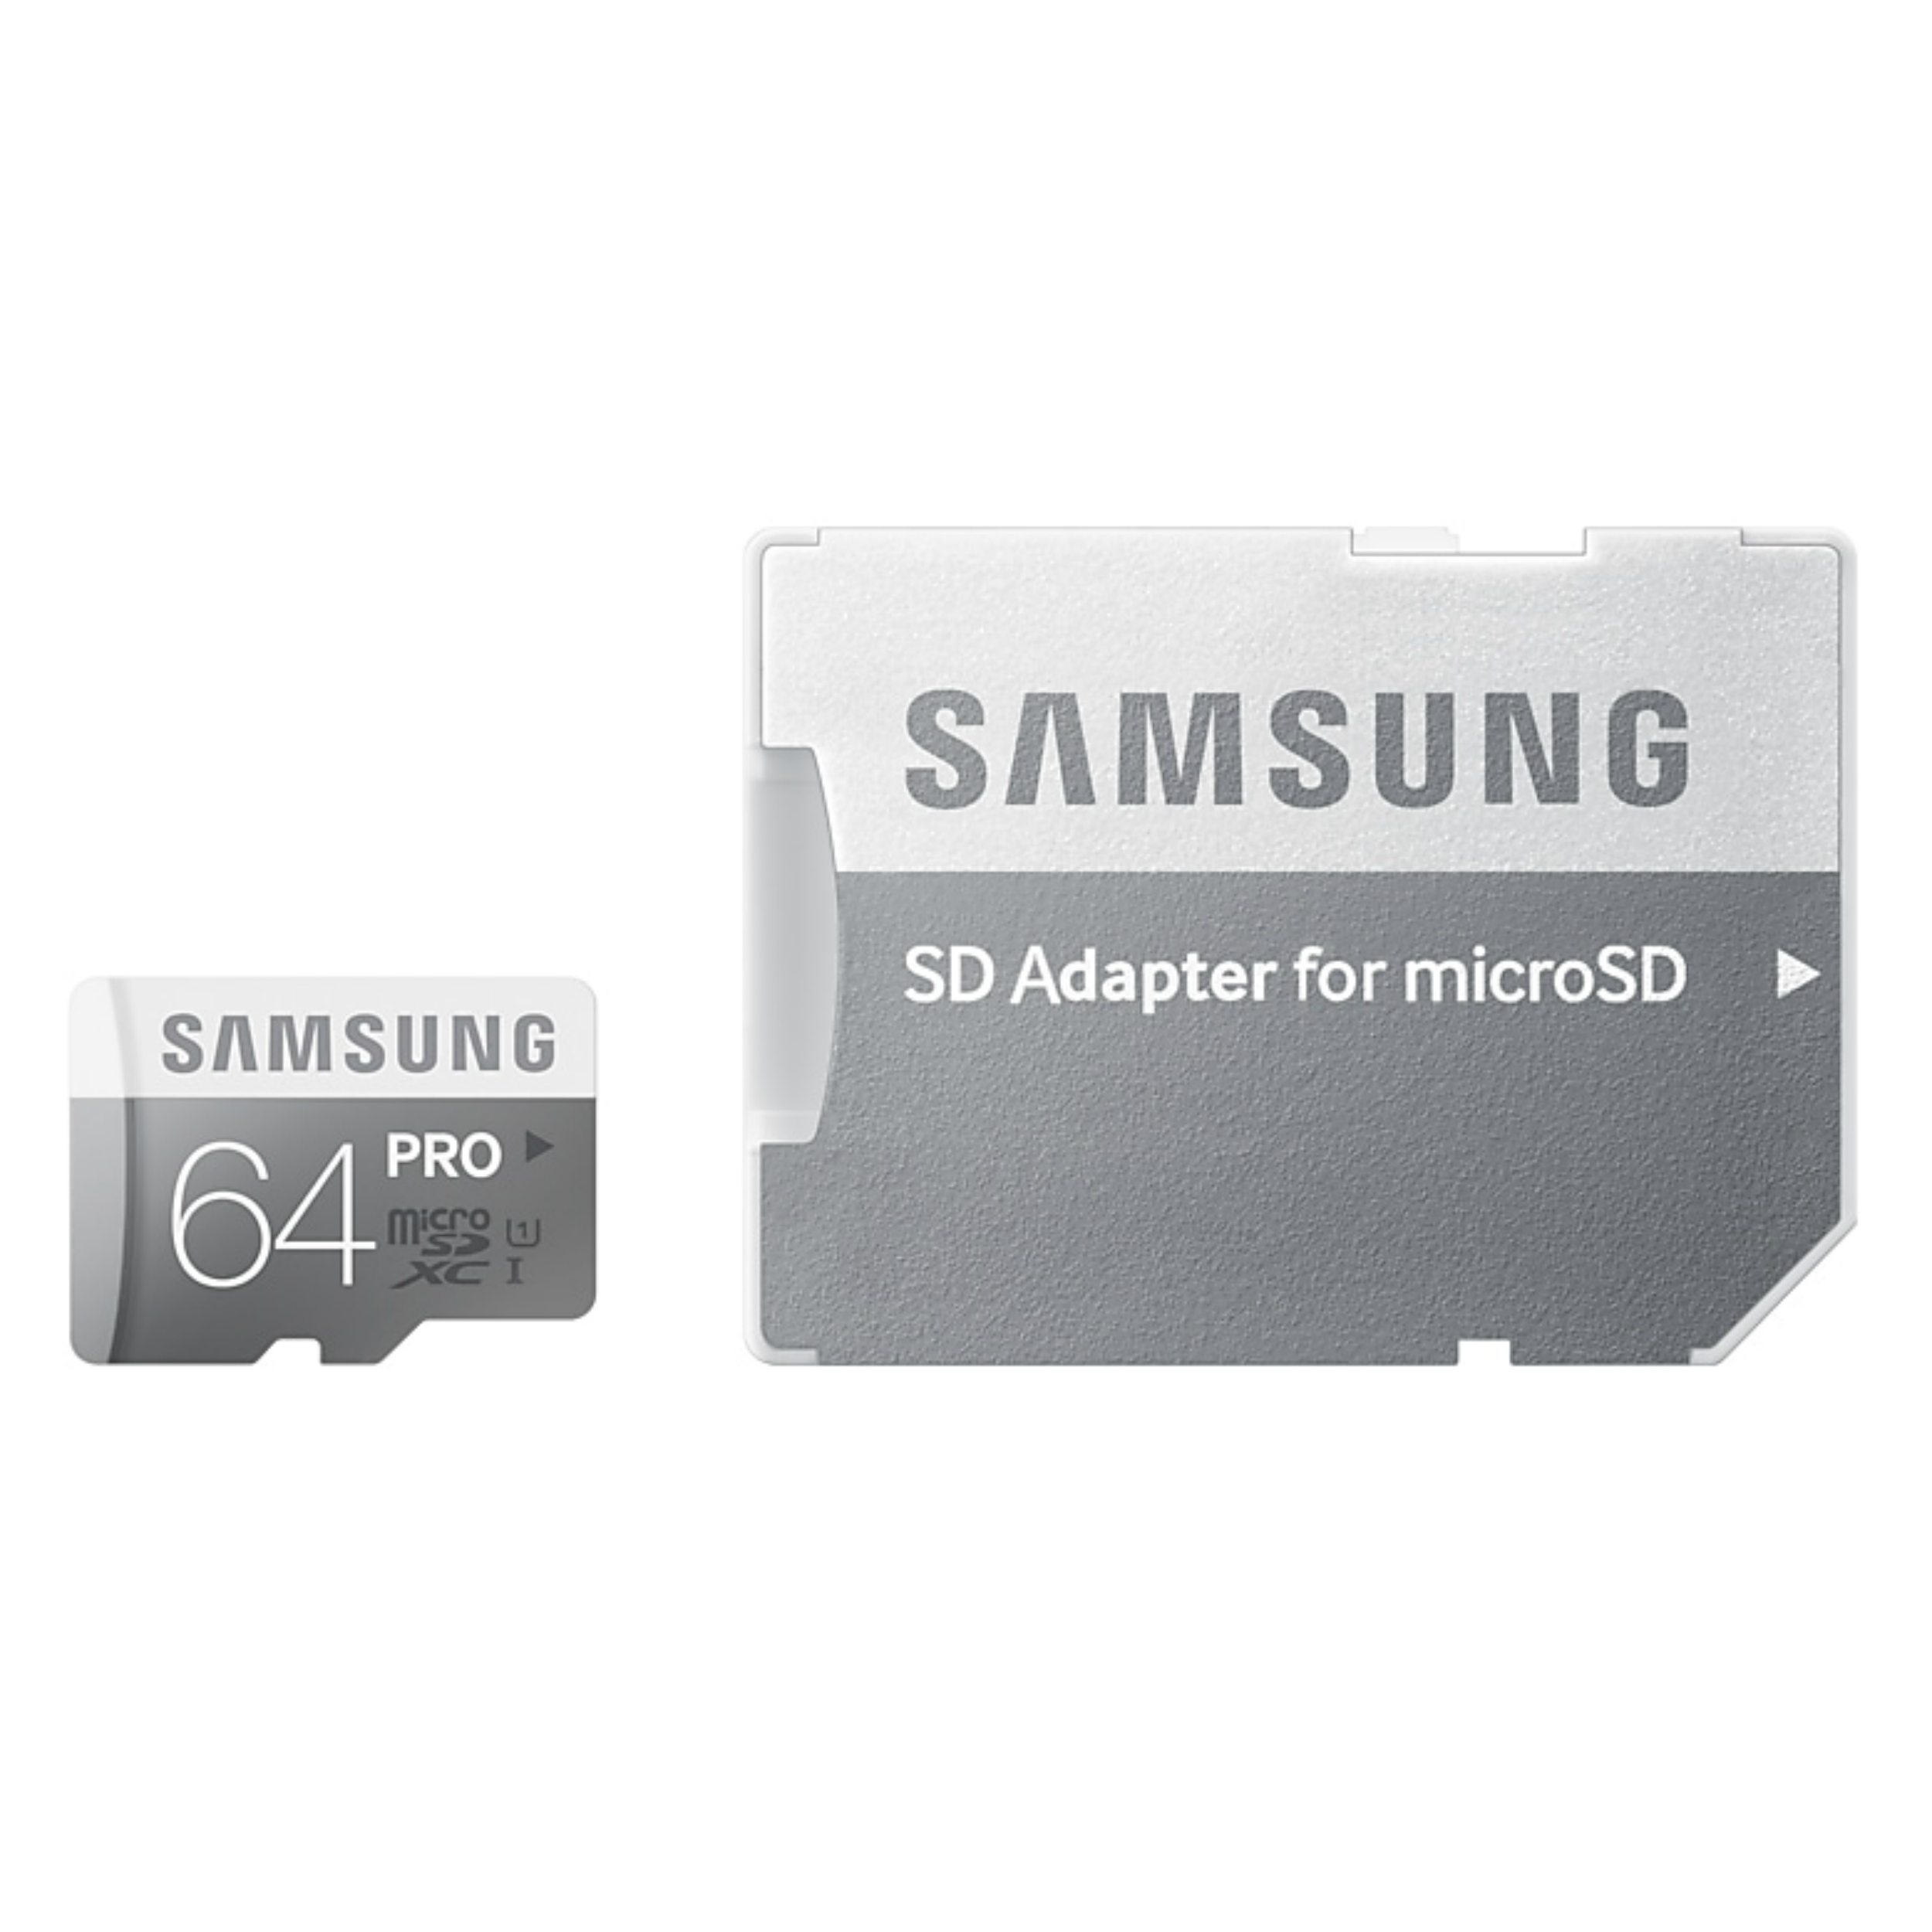 کارت حافظه microSDHC مدل Pro کلاس 10 استاندارد UHS-I U1 سرعت 90MBps ظرفیت 64 گیگابایت به همراه آداپتور SD